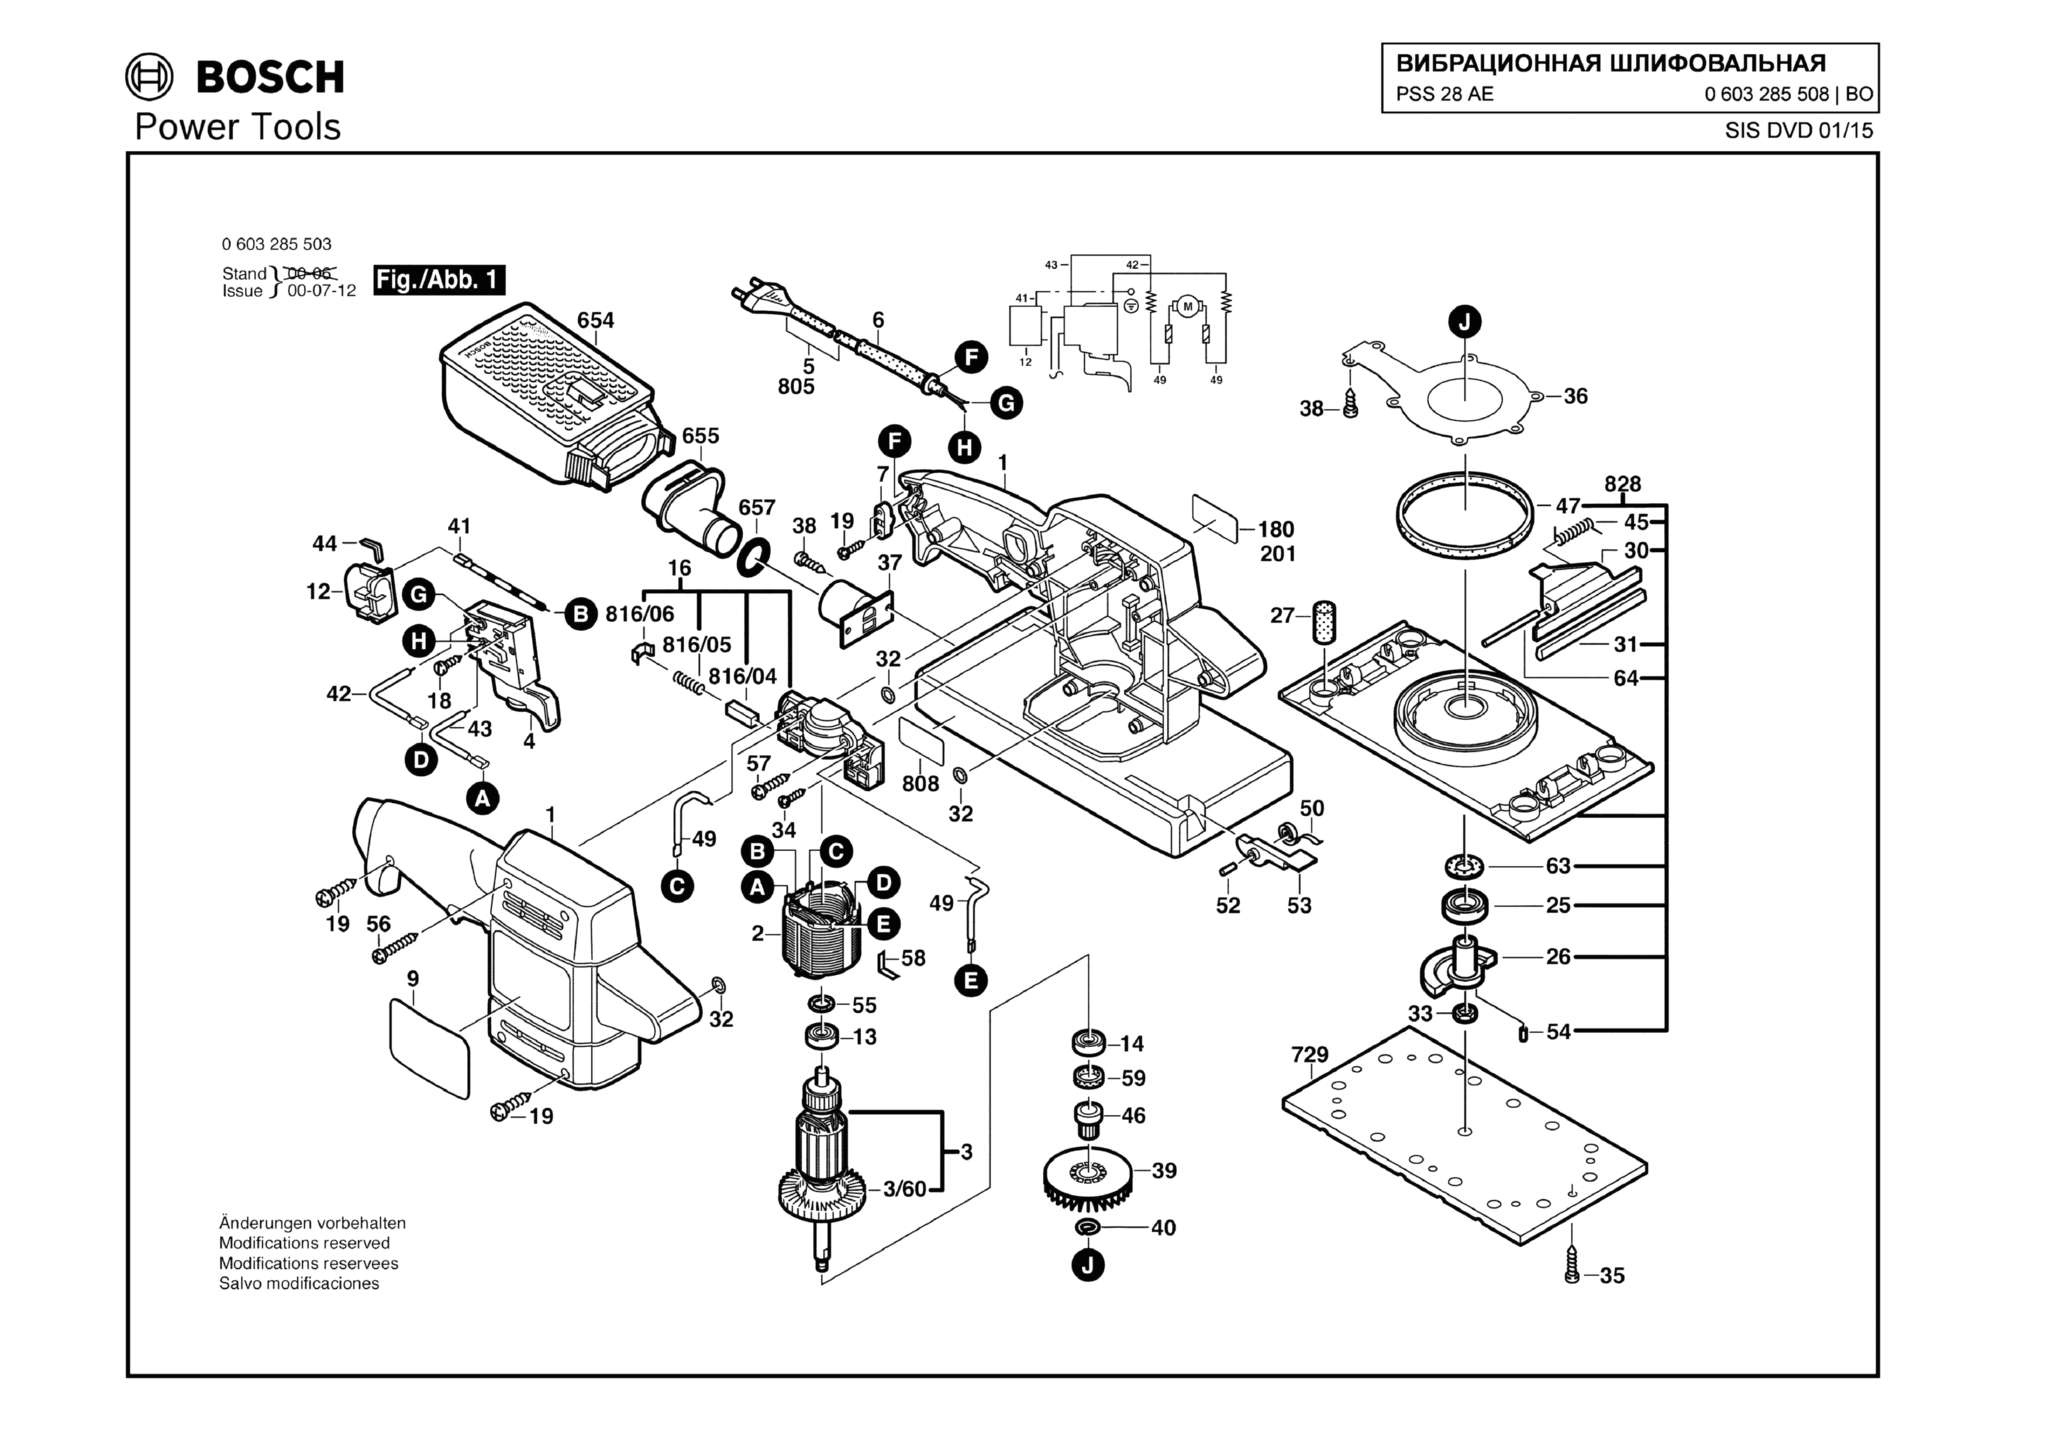 Запчасти, схема и деталировка Bosch PSS 28 AE (ТИП 0603285508)